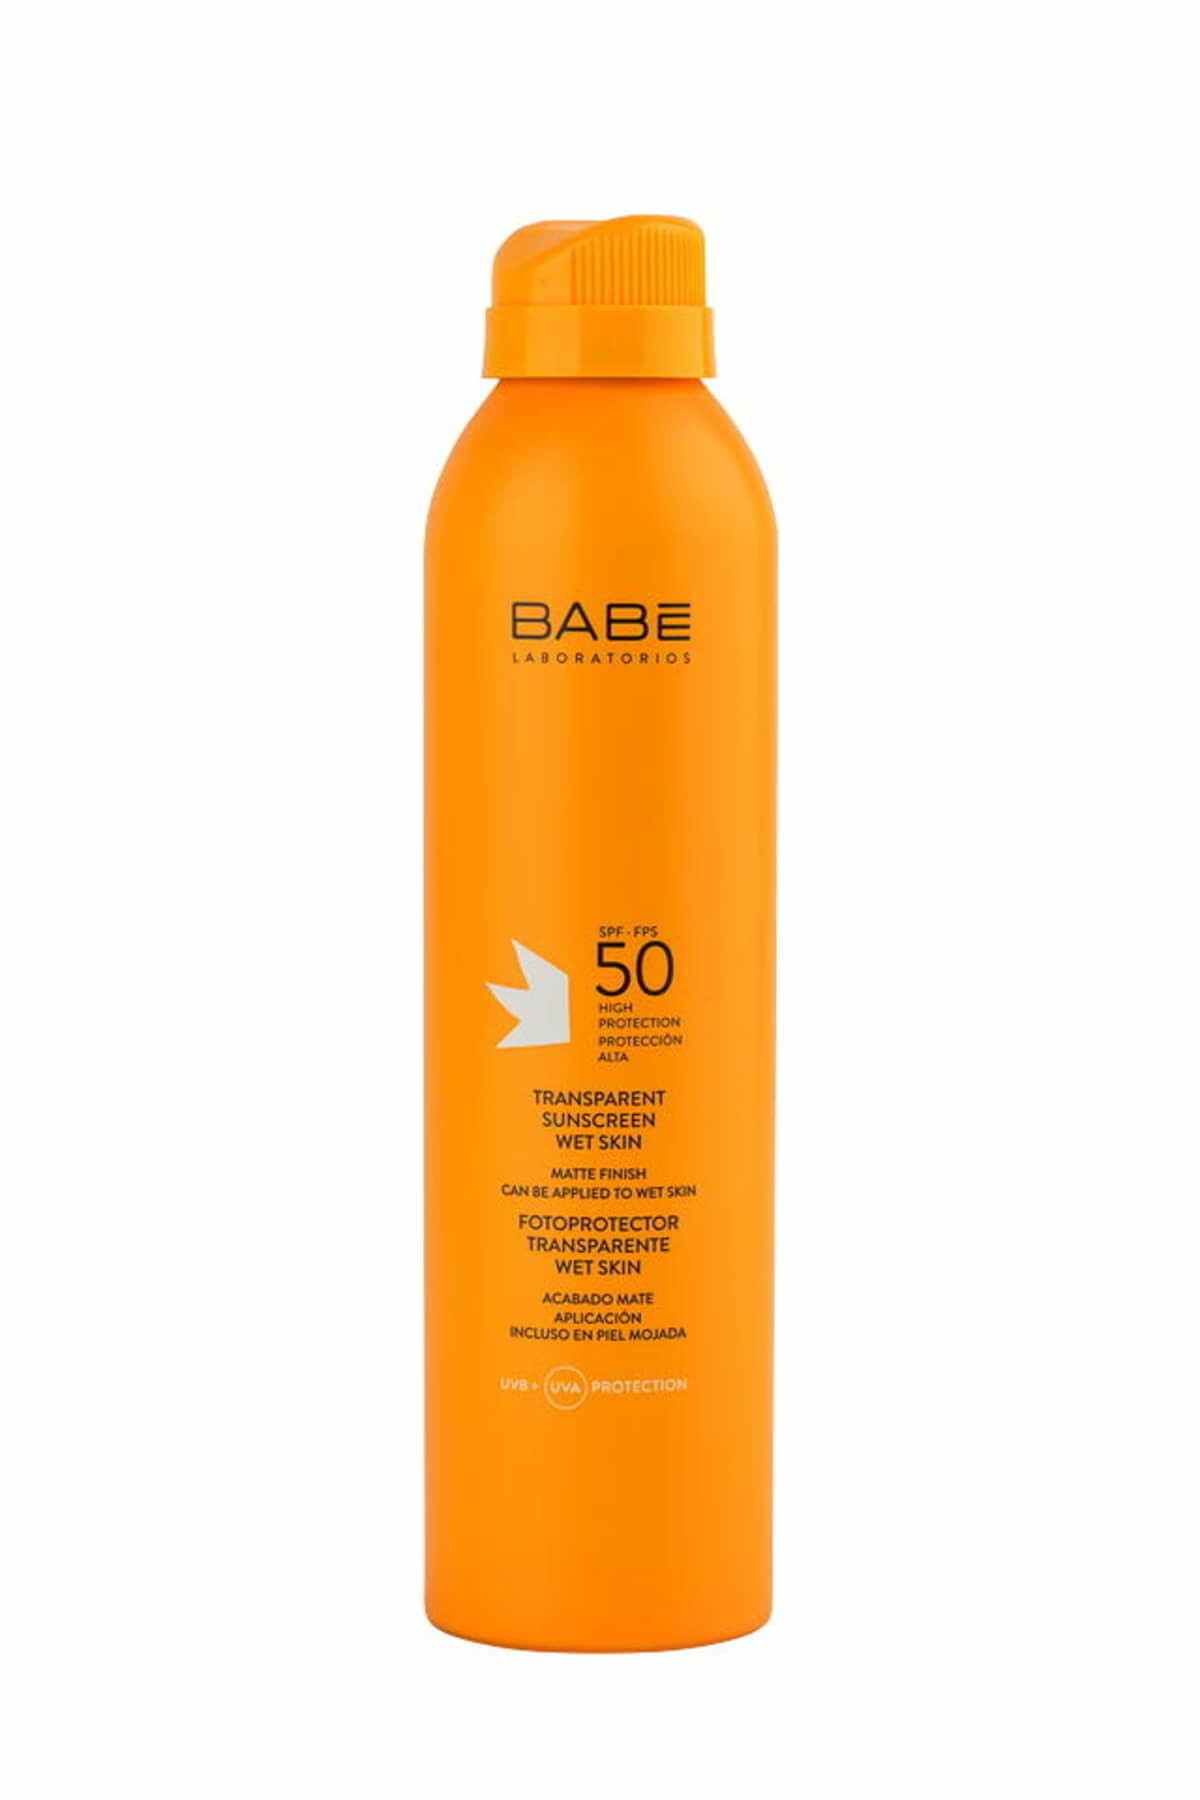 Babe Laboratorios Transparent Sunscreen Wet Skin SPF 50 + -Islak Cilde Uygulanabilen Güneş Spreyi 200 ml